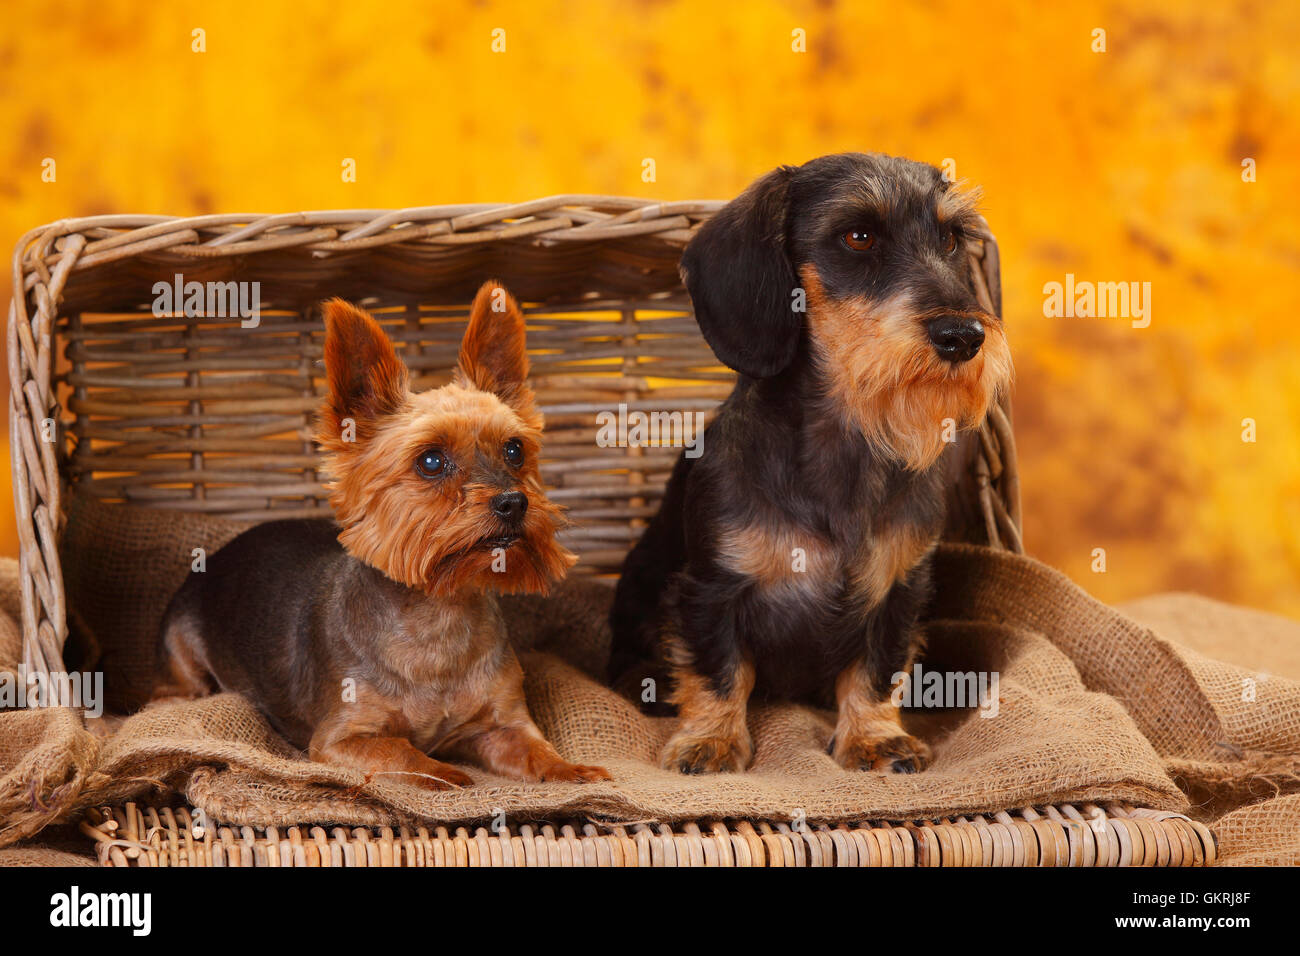 Yorkshire Terrier and Miniature Wirehaired Dachshund|Yorkshire Terrier und Zwergrauhaardackel Stock Photo